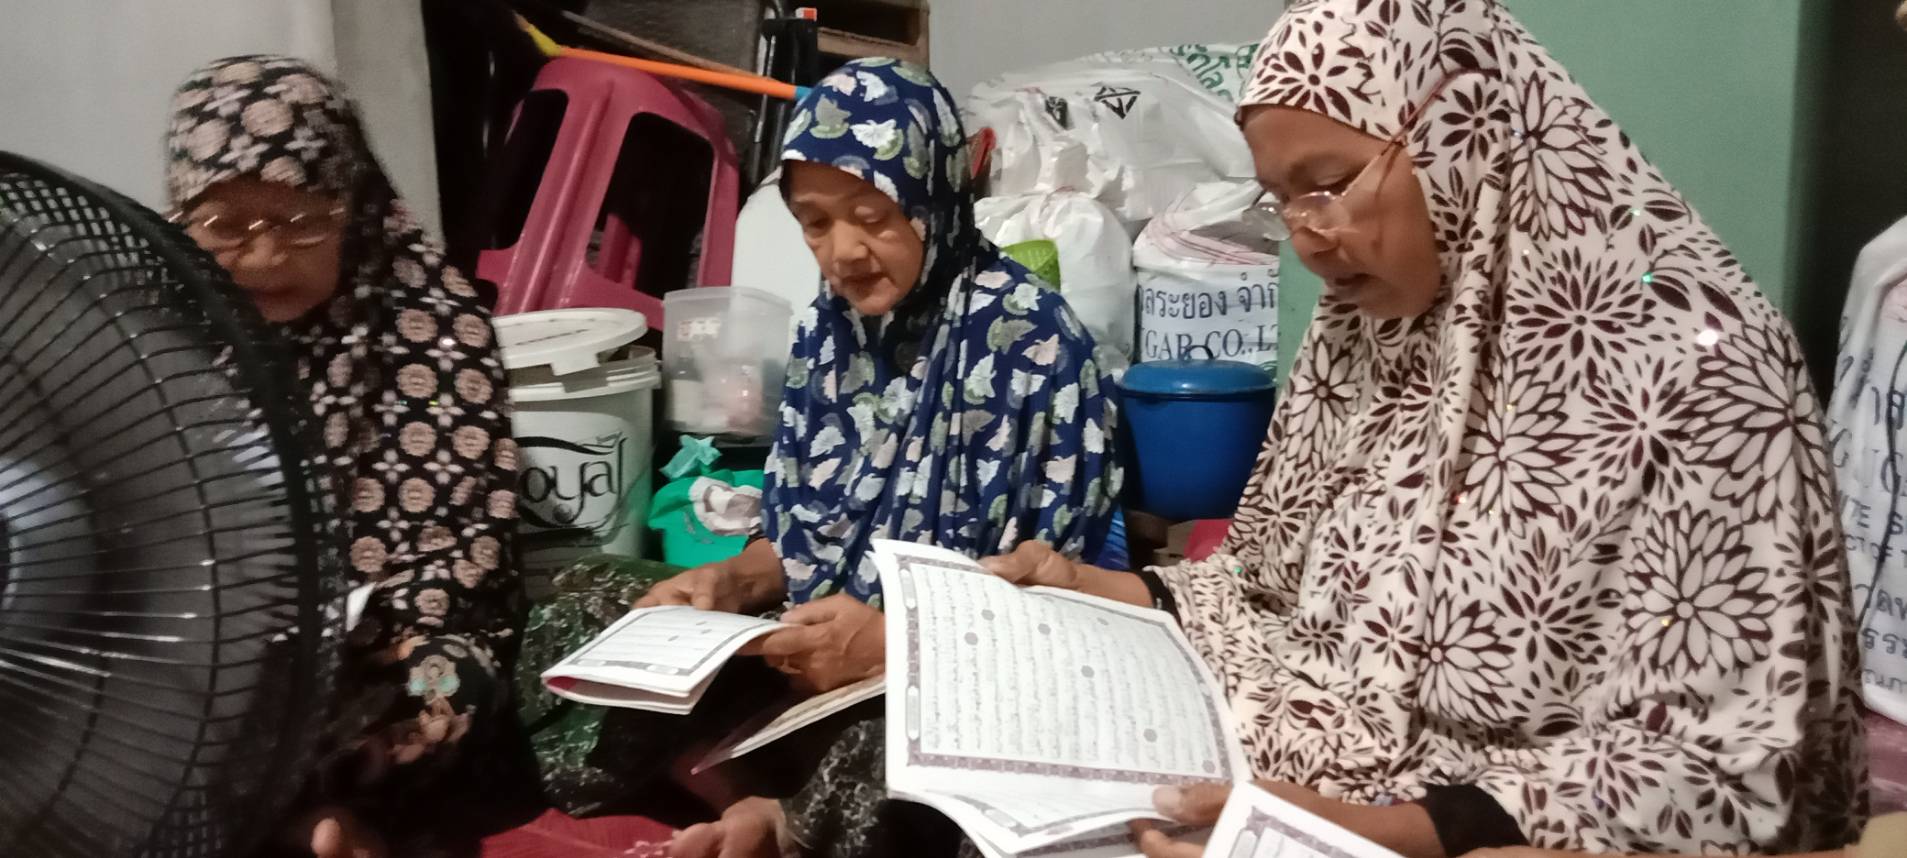 ผู้ช่วยโต๊ะครู นำผู้เรียนไปอ่านอัล-กุรอ่านให้แก่บ้านประชาชนในพื้นที่